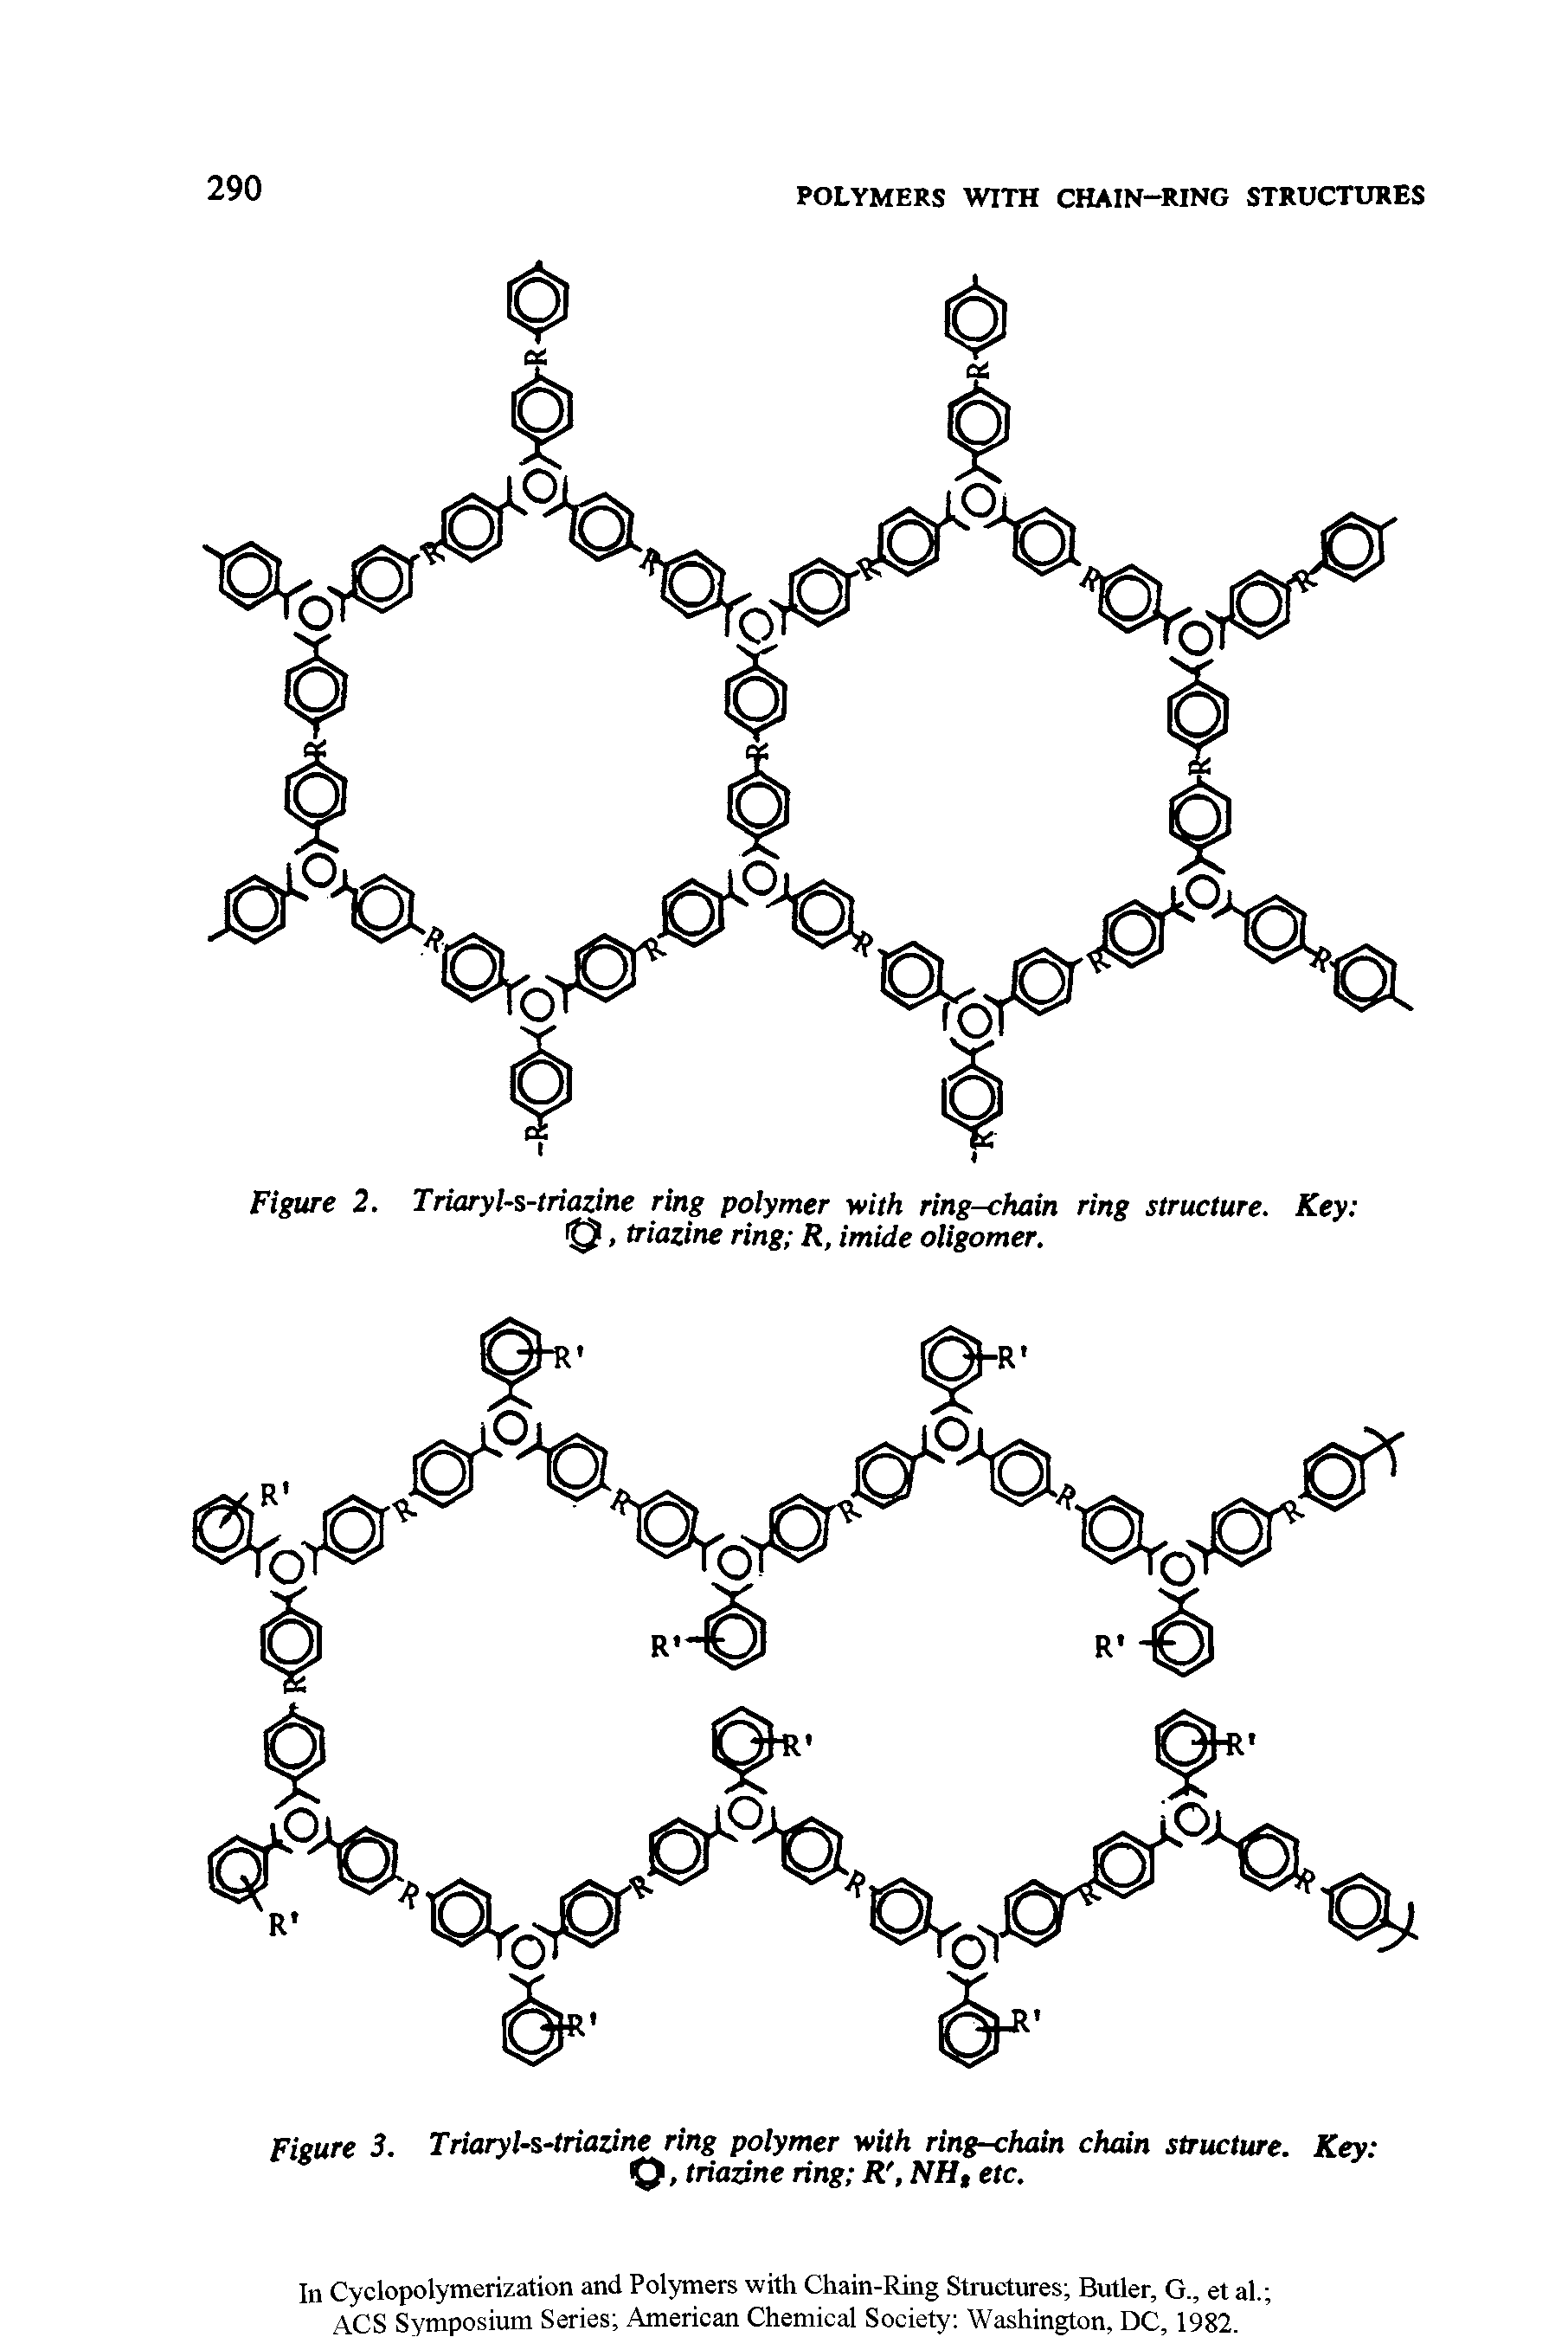 Figure 3. Triaryl-s-triazine ring polymer with ring-chain chain structure. Key Q, triazine ring R, NH, etc.